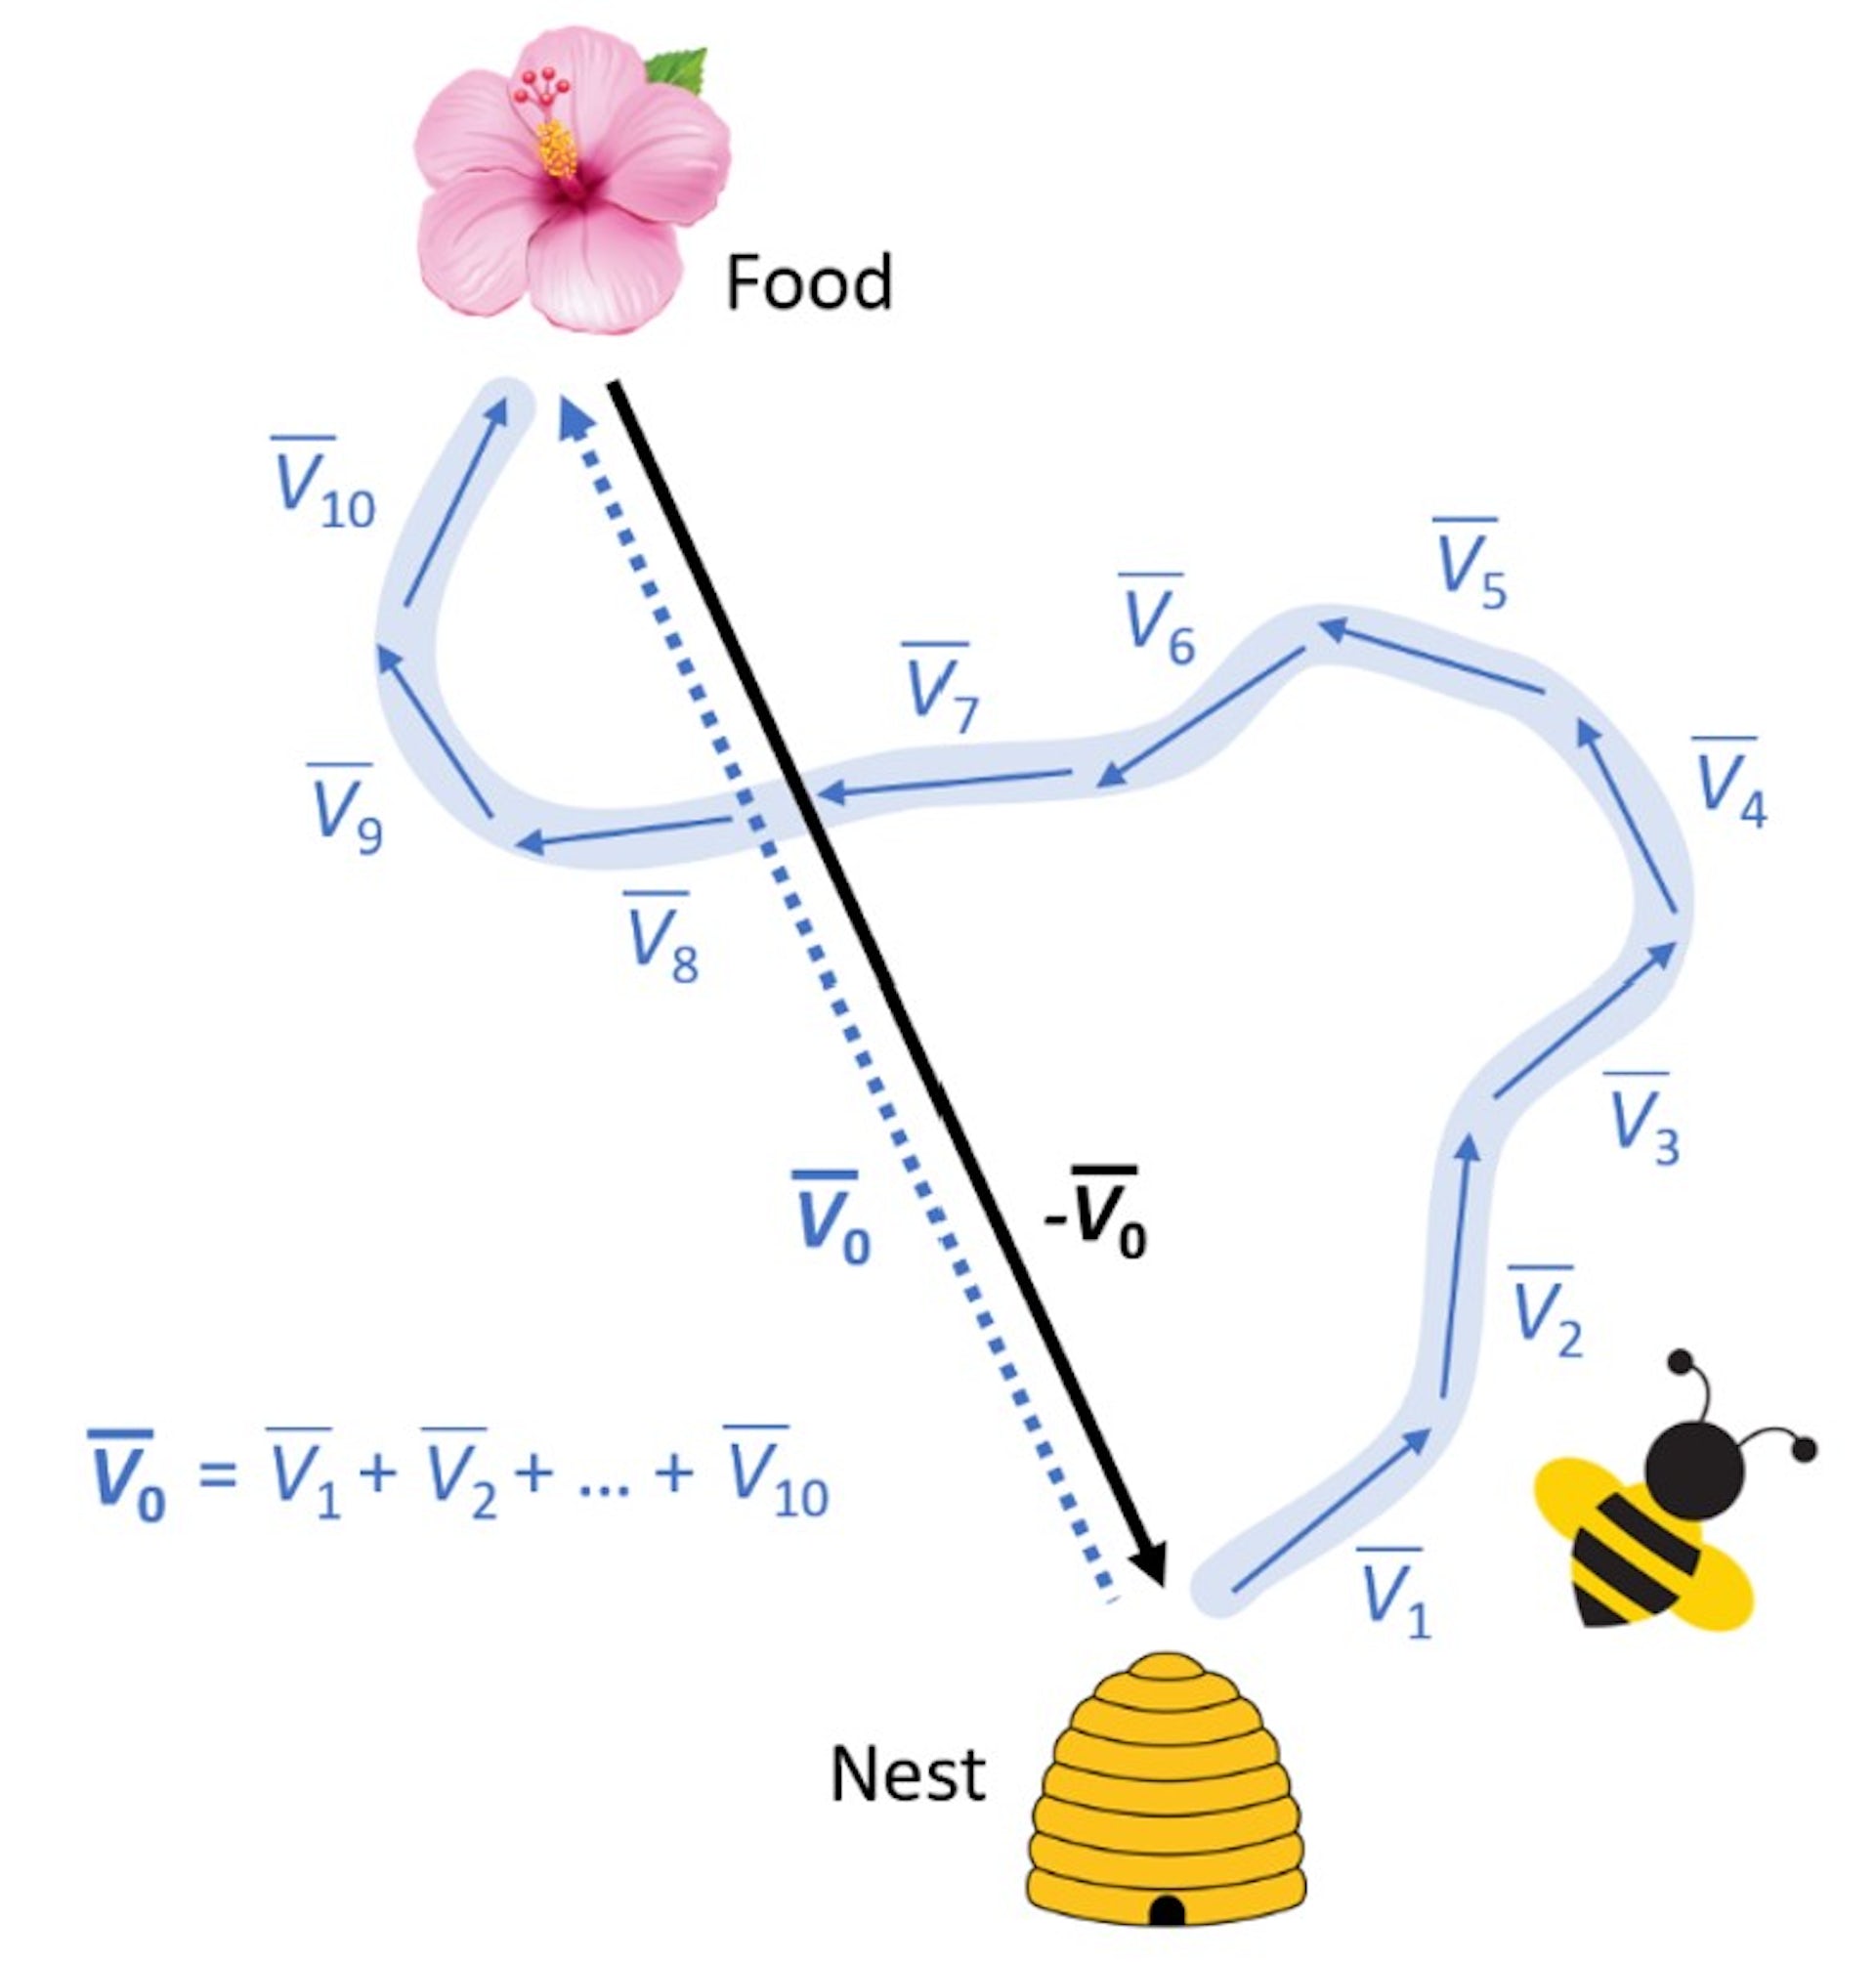 En graf som viser en bies sikk-sakk-flukt og direkteveien hjem.